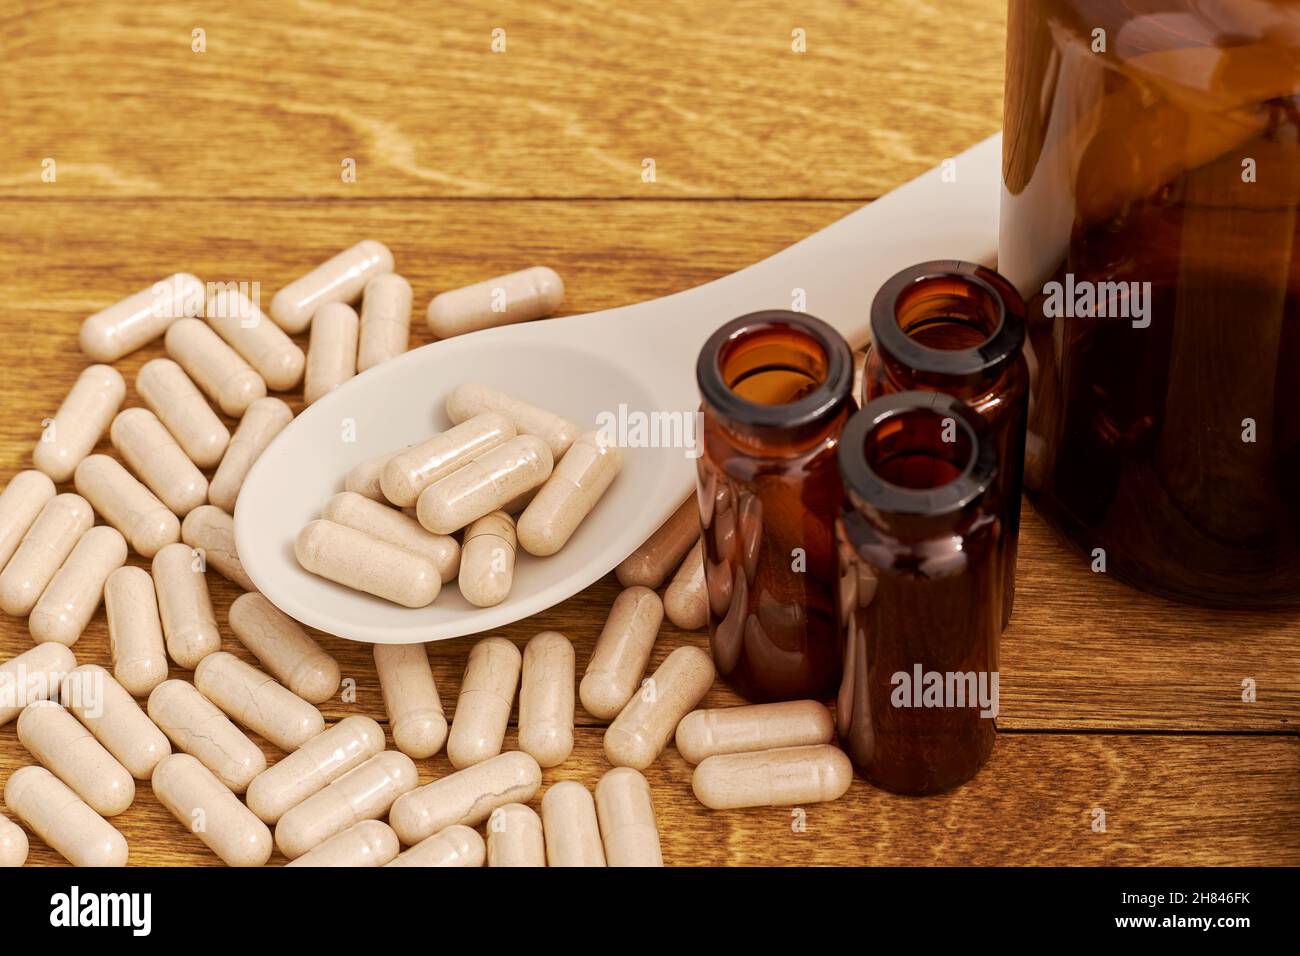 Cuillère de surdosage avec un surdosage de pilules de régime sur la table en bois.Notion d'obsession de drogue Banque D'Images